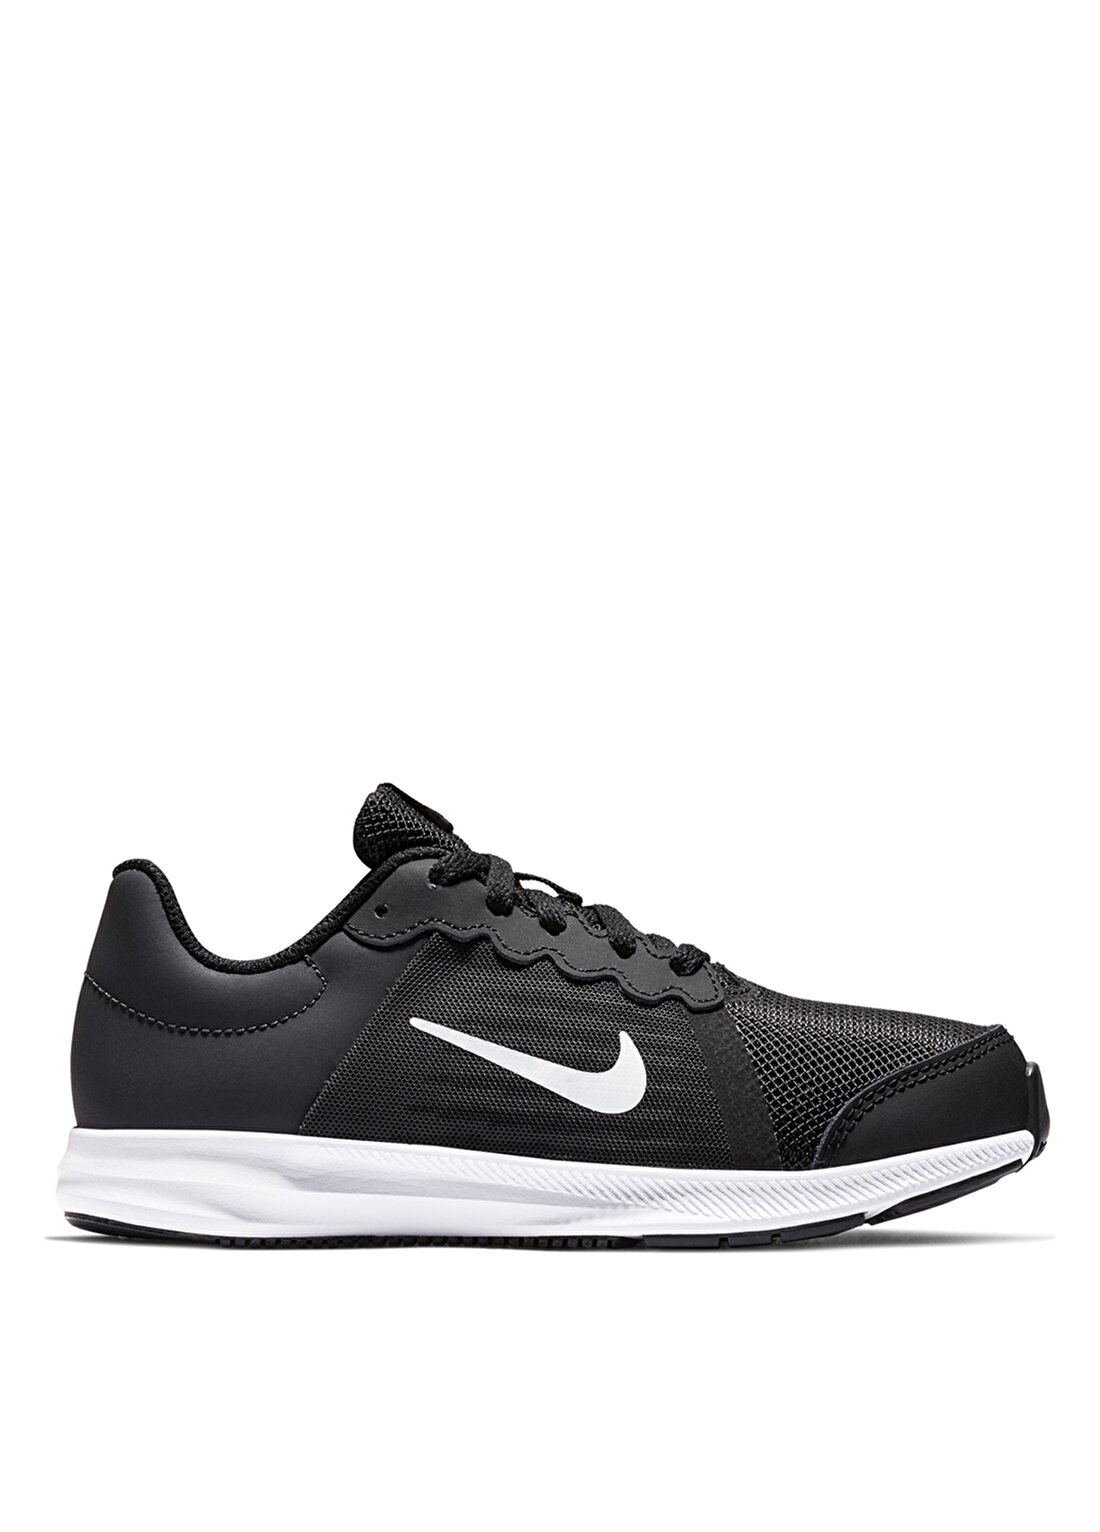 Nike Downshifter 8 922860-001 Yürüyüş Ayakkabısı